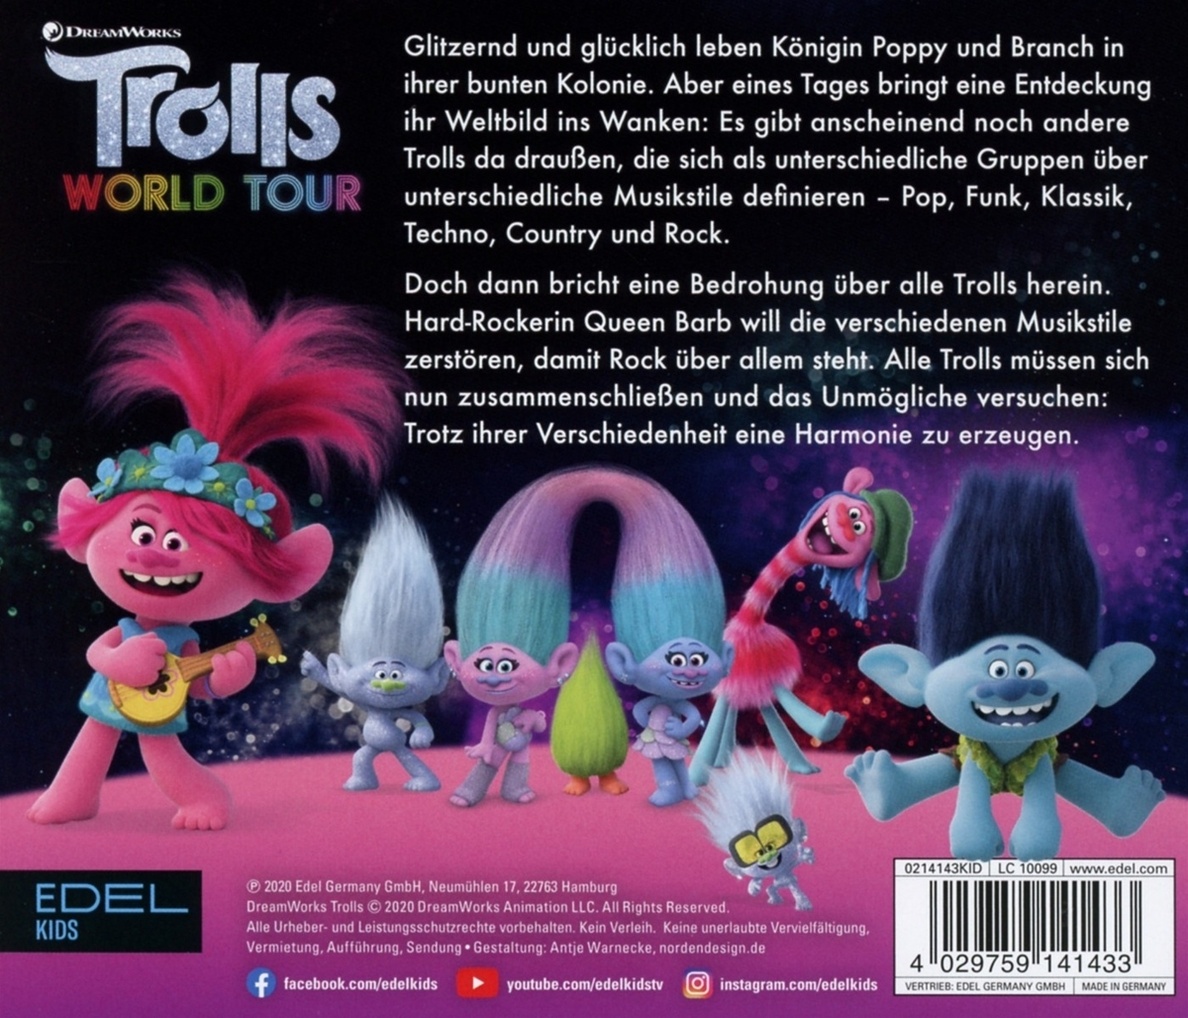 Weltbild.de Trolls jetzt World bei Audio-CD Hörbuch Tour,1 bestellen